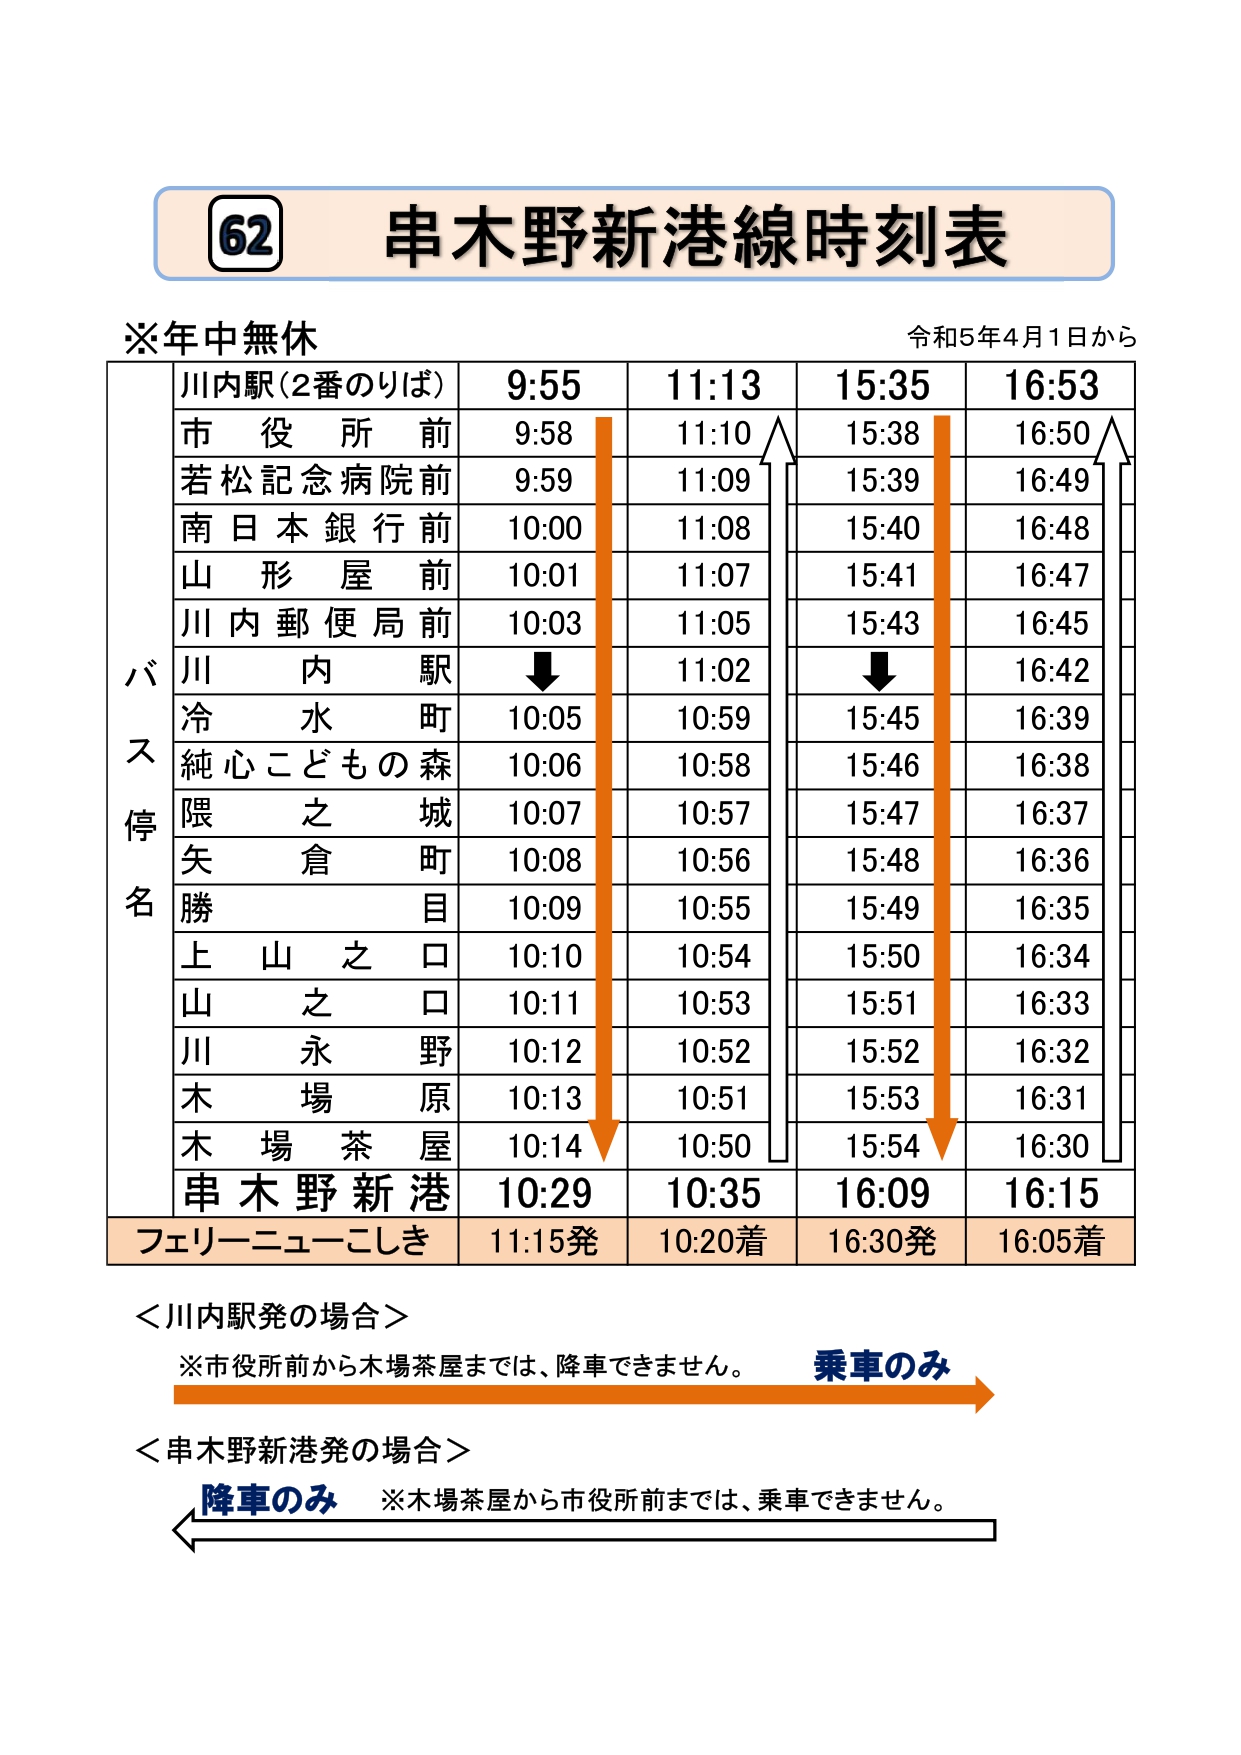 串木野新港線時刻表令和5年4月1日から